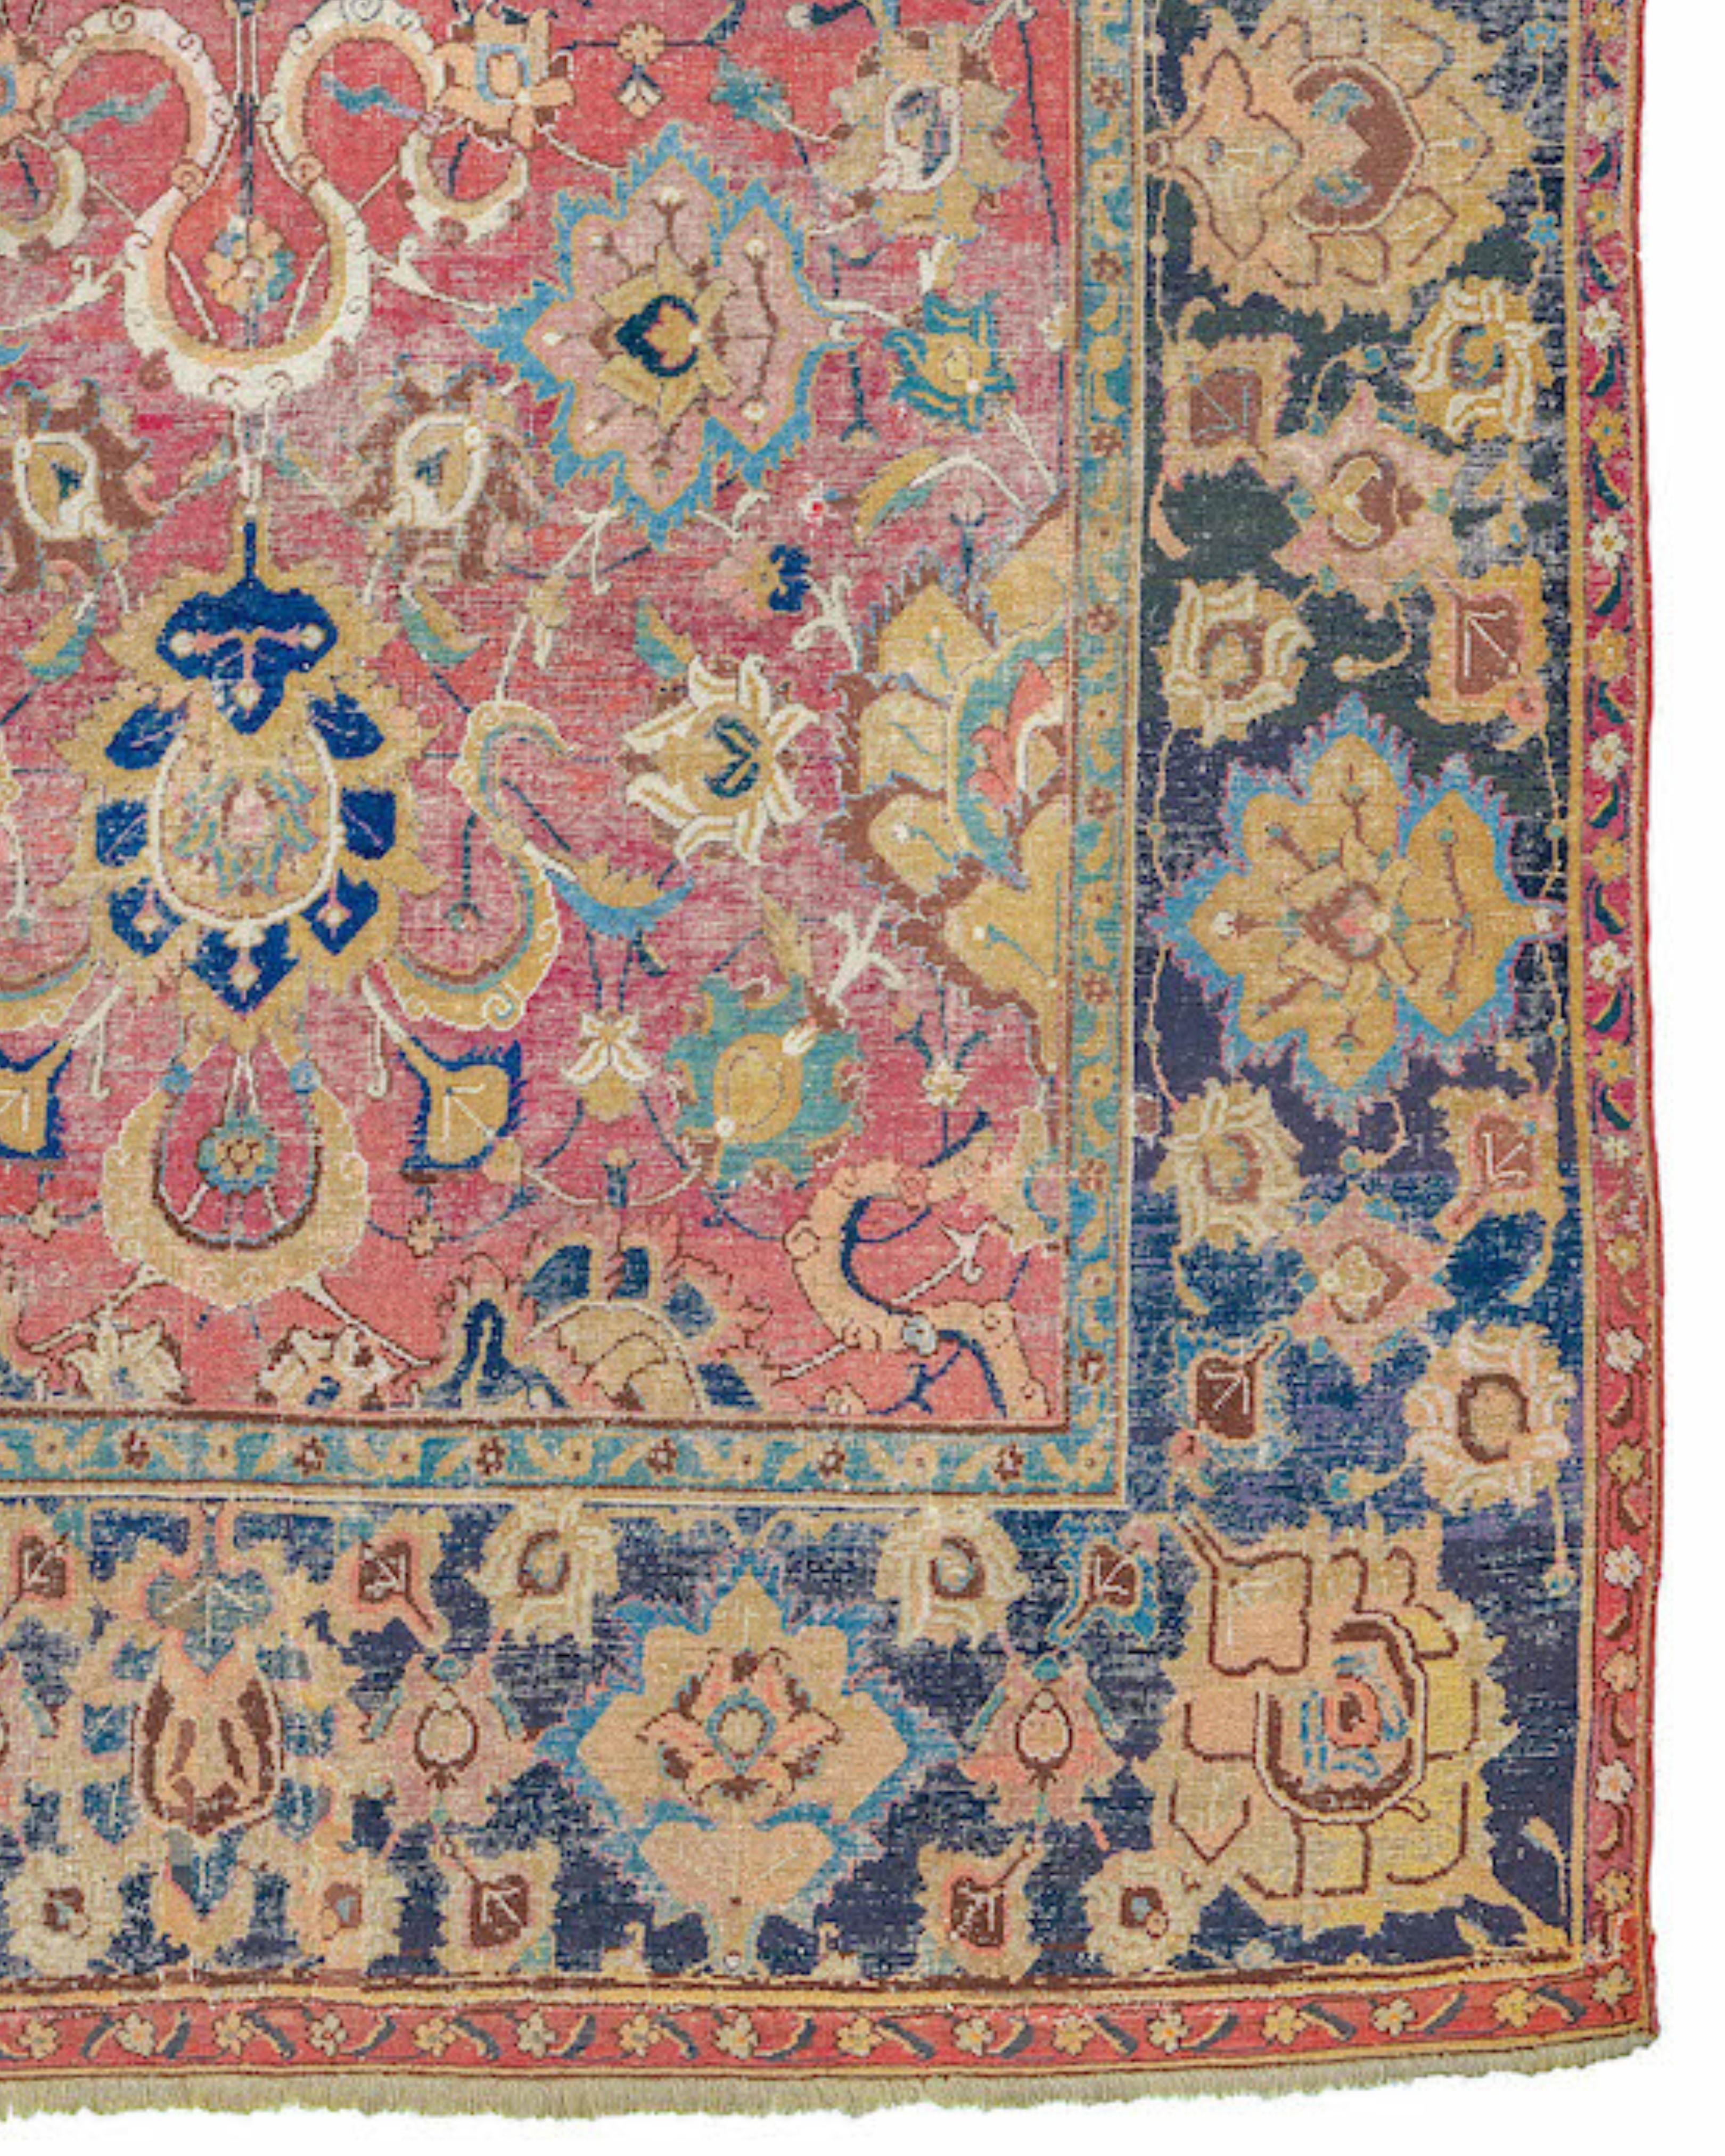 Tapis long indo-Isfahan ancien, 17ème siècle

Tout au long du XVIIe siècle, les modes et modèles persans ont joué un rôle essentiel dans le développement des arts en Inde. Les artistes, les artisans et les poètes persans ont facilement trouvé des